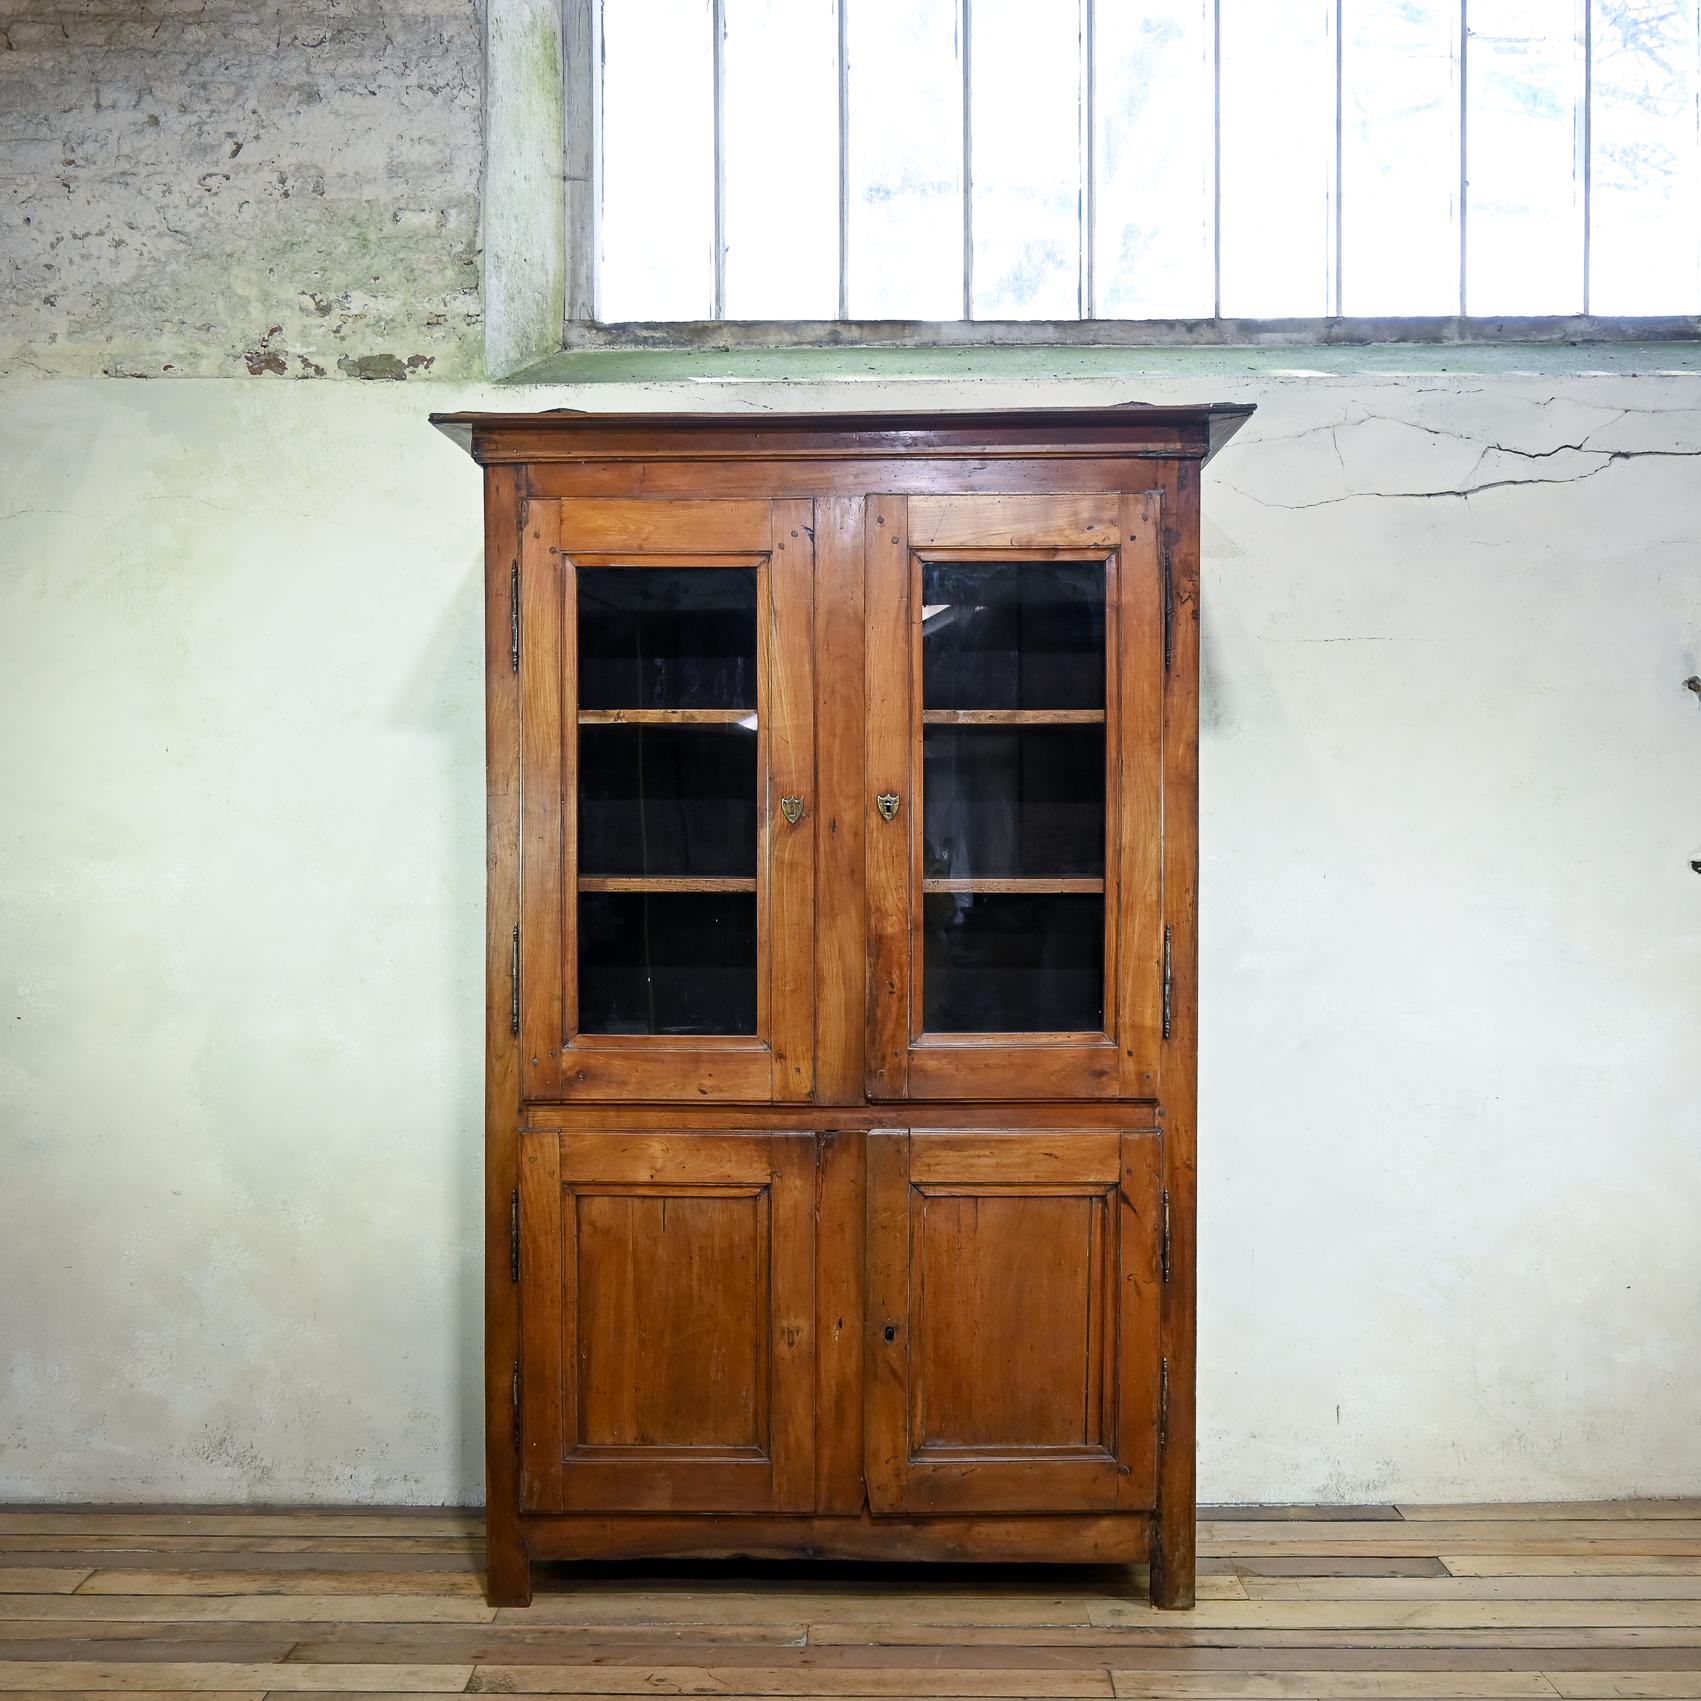 Charmante armoire en merisier du milieu du 19e siècle. Elle présente une corniche moulurée simpliste au-dessus d'une paire de portes vitrées encastrées et d'une autre paire de portes à panneaux au-dessous, avec trois étagères intérieures fixes.